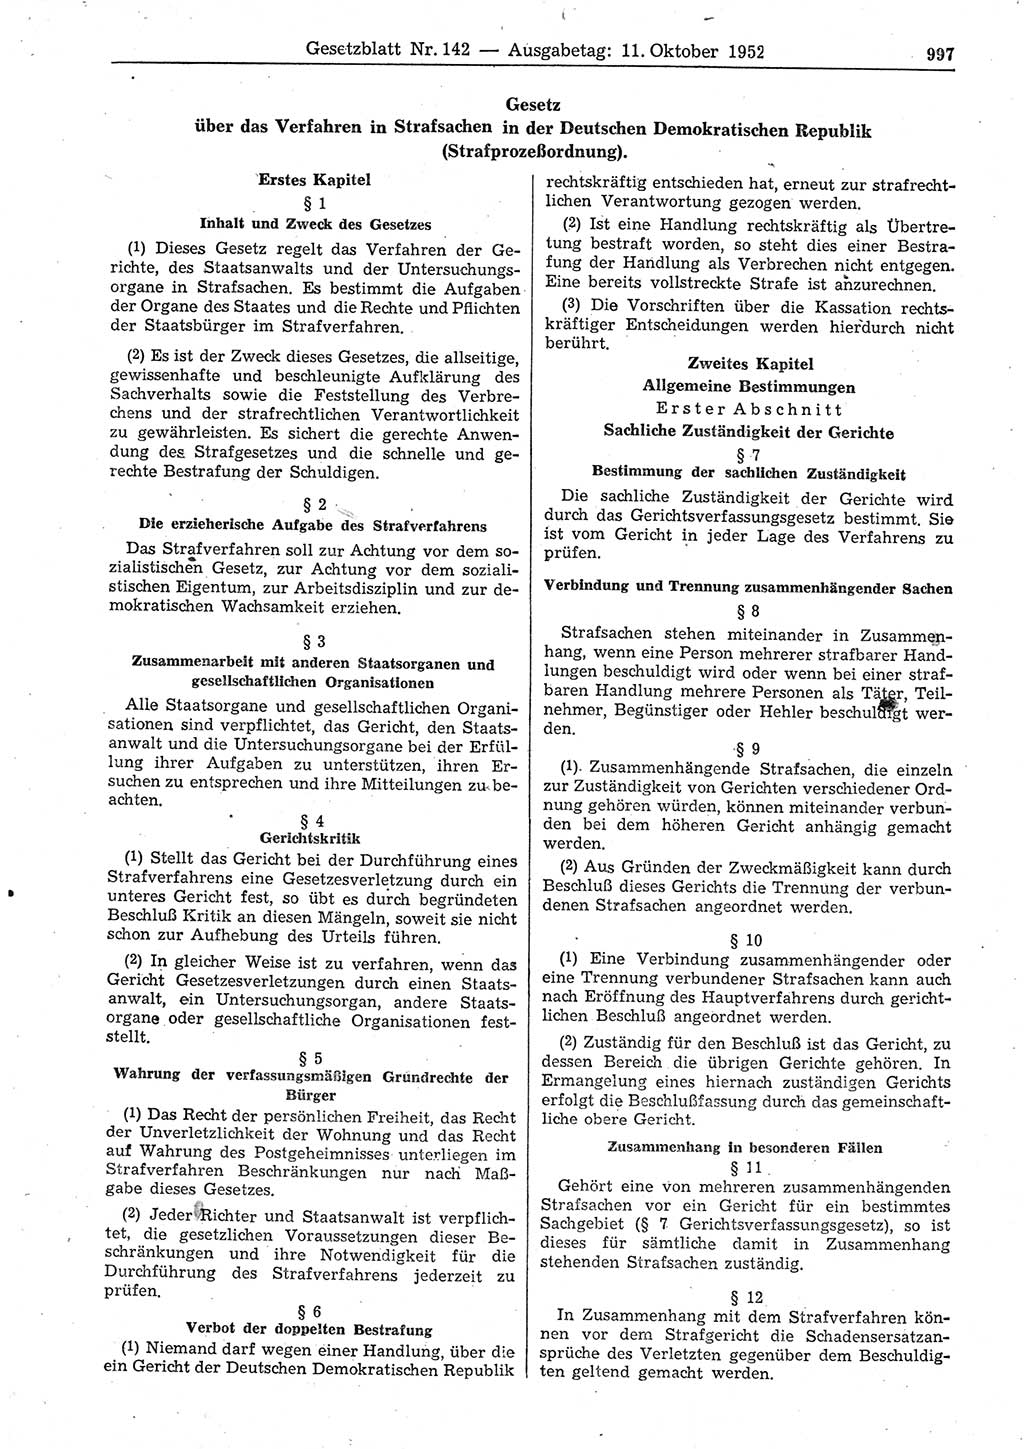 Gesetzblatt (GBl.) der Deutschen Demokratischen Republik (DDR) 1952, Seite 997 (GBl. DDR 1952, S. 997)